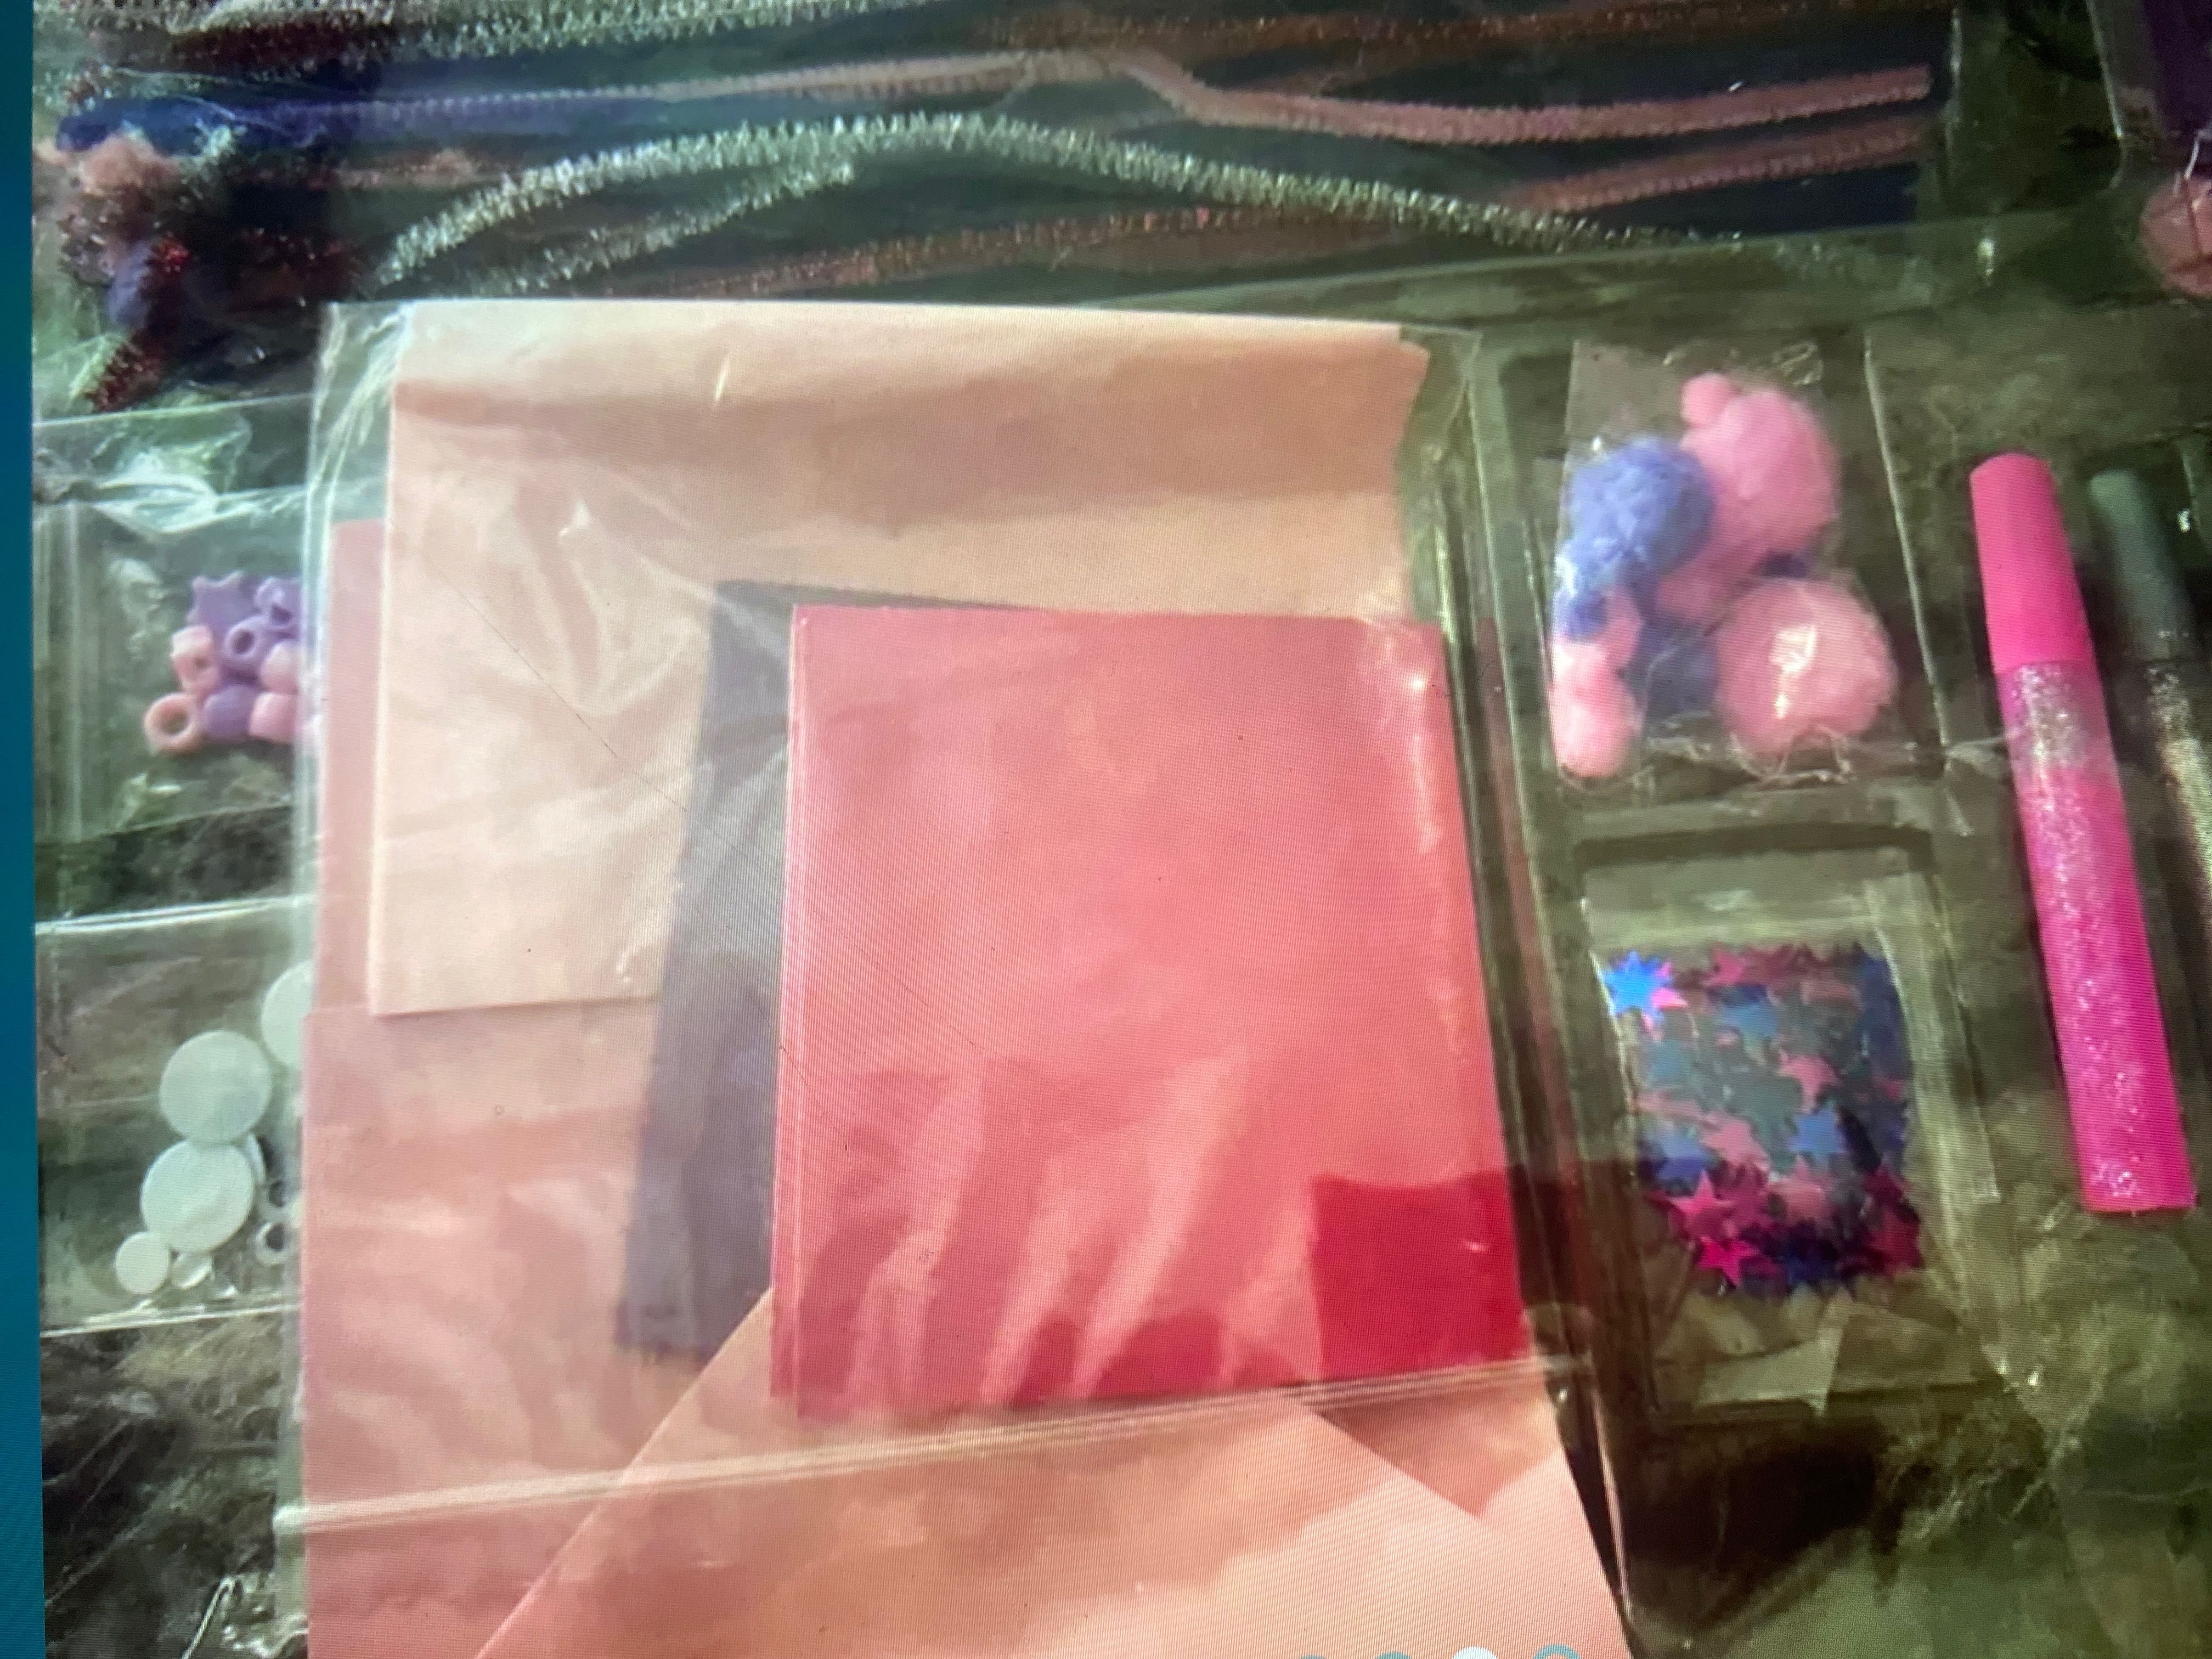 Набір для творчості -Basic Craft pink bic box of craft